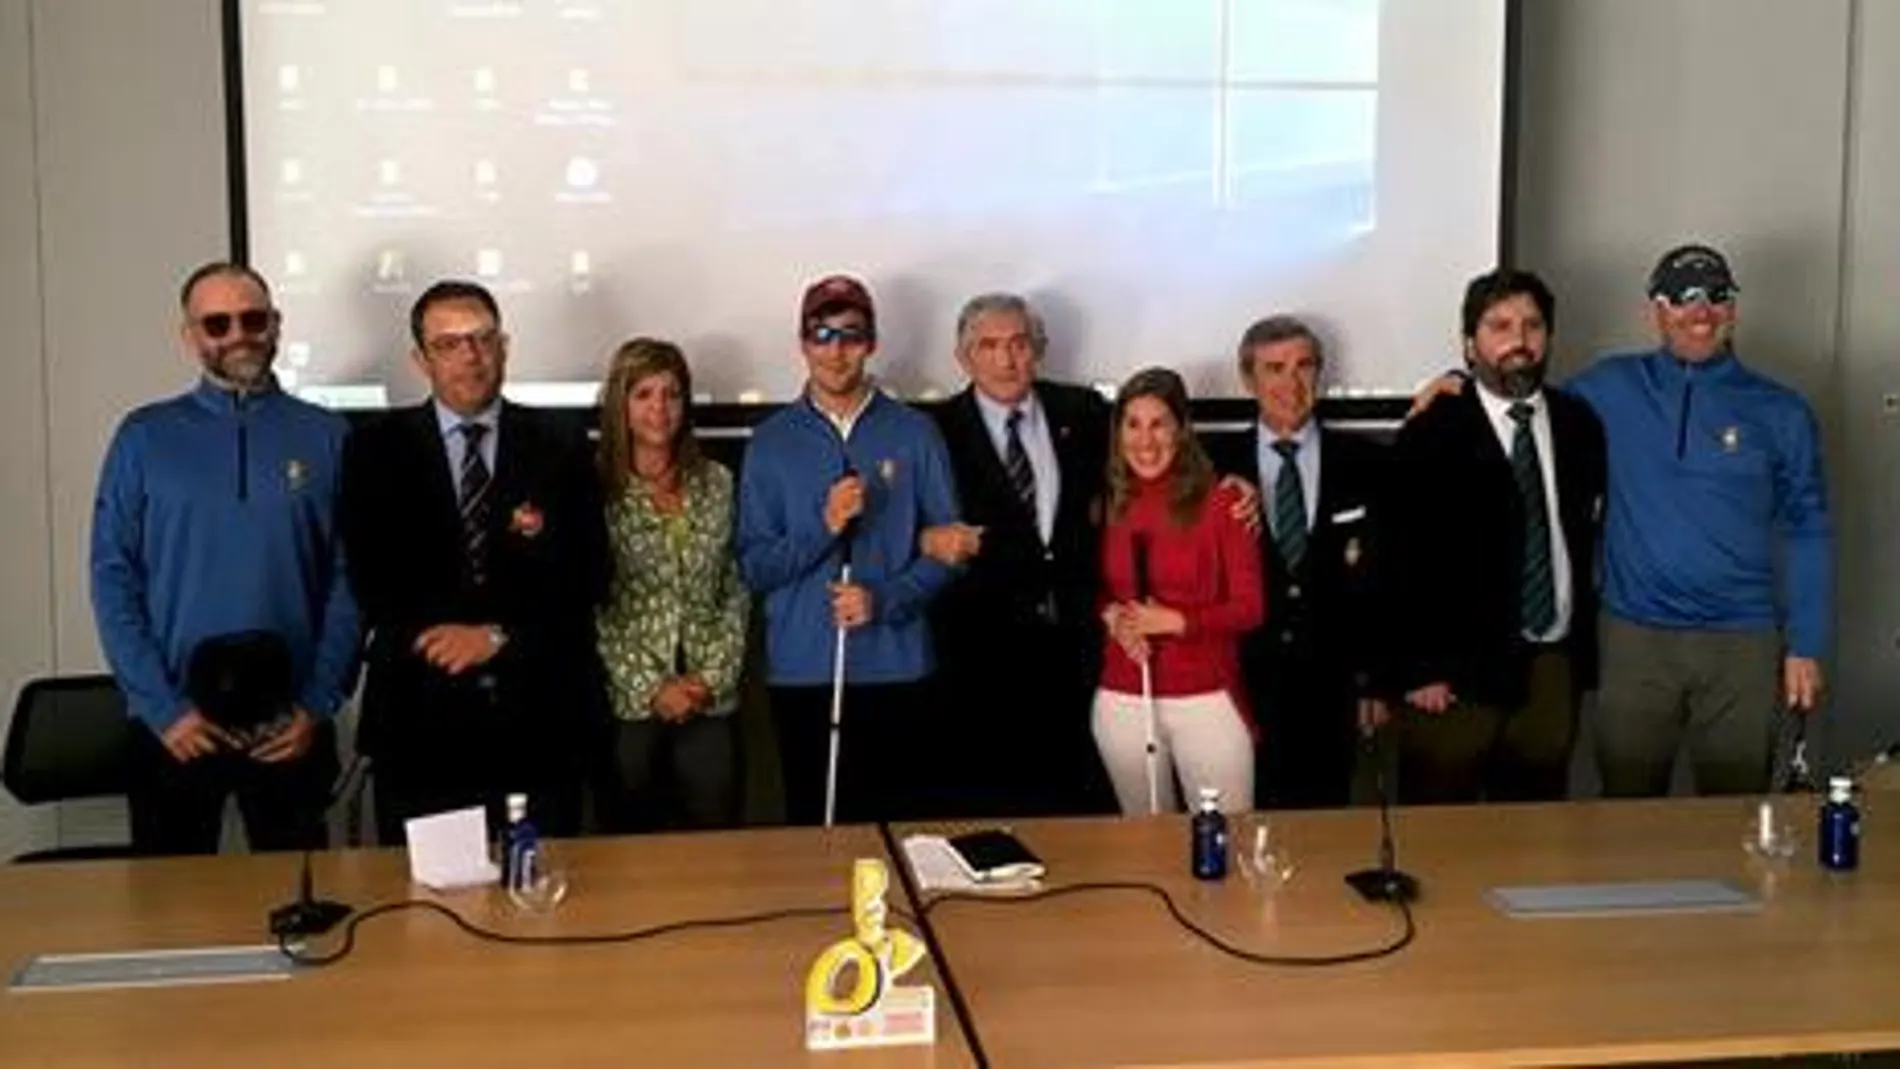 Presentación Daikin Madrid Open de Golf Adaptado